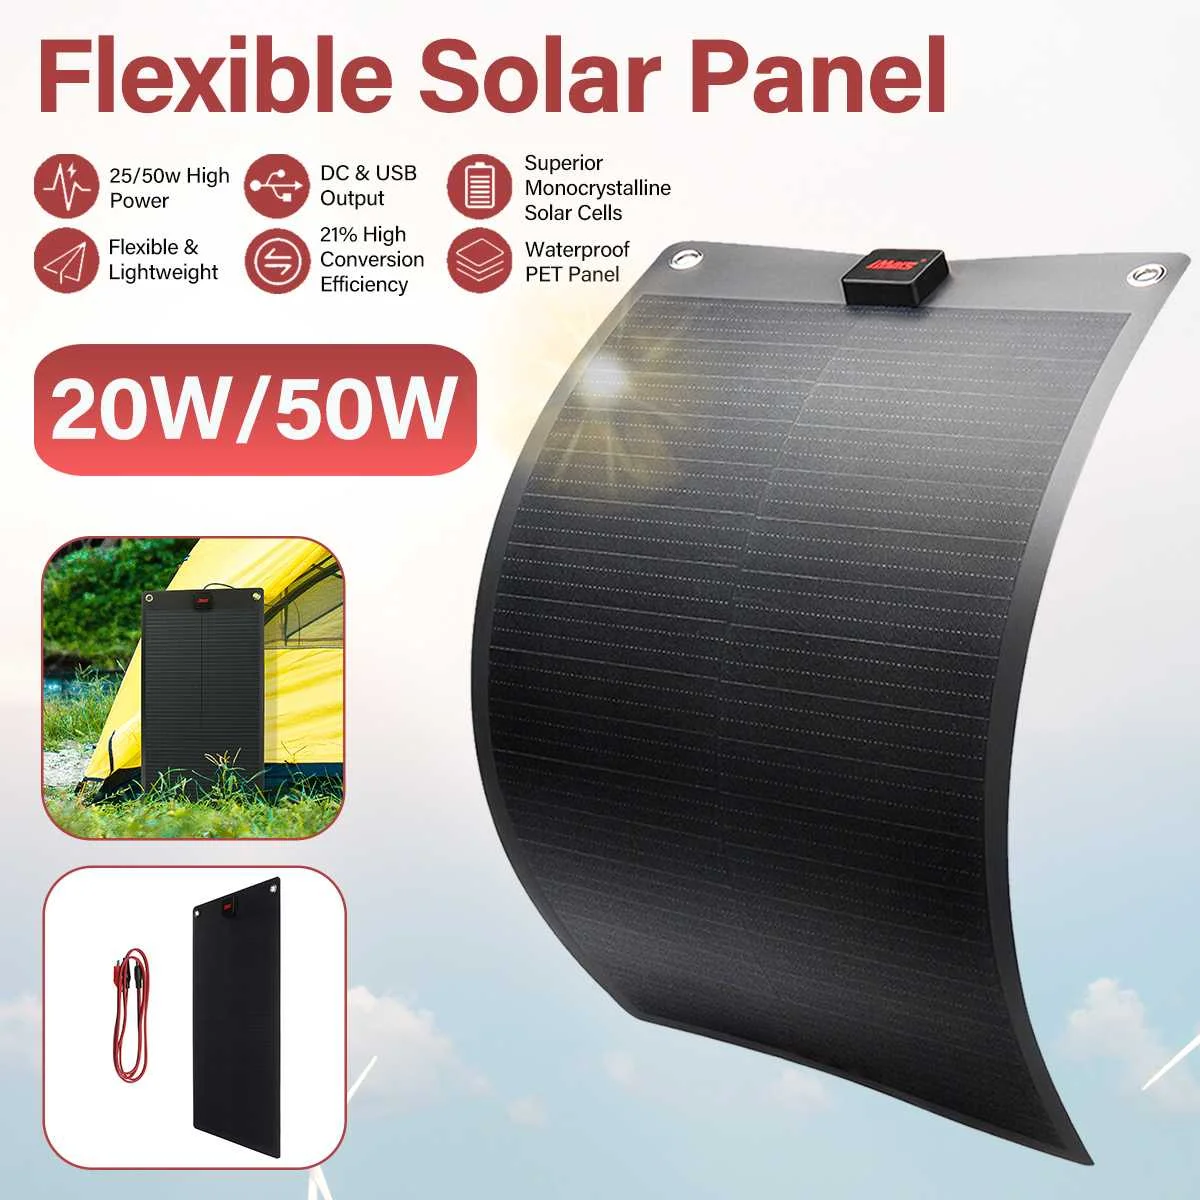 IMars 25W/50W 19V PET Solar Panel Flexible Zelle Batterie Ladegerät DC & USB Ausgang Tragbare solar Panel Kit Komplett Für Outdoor